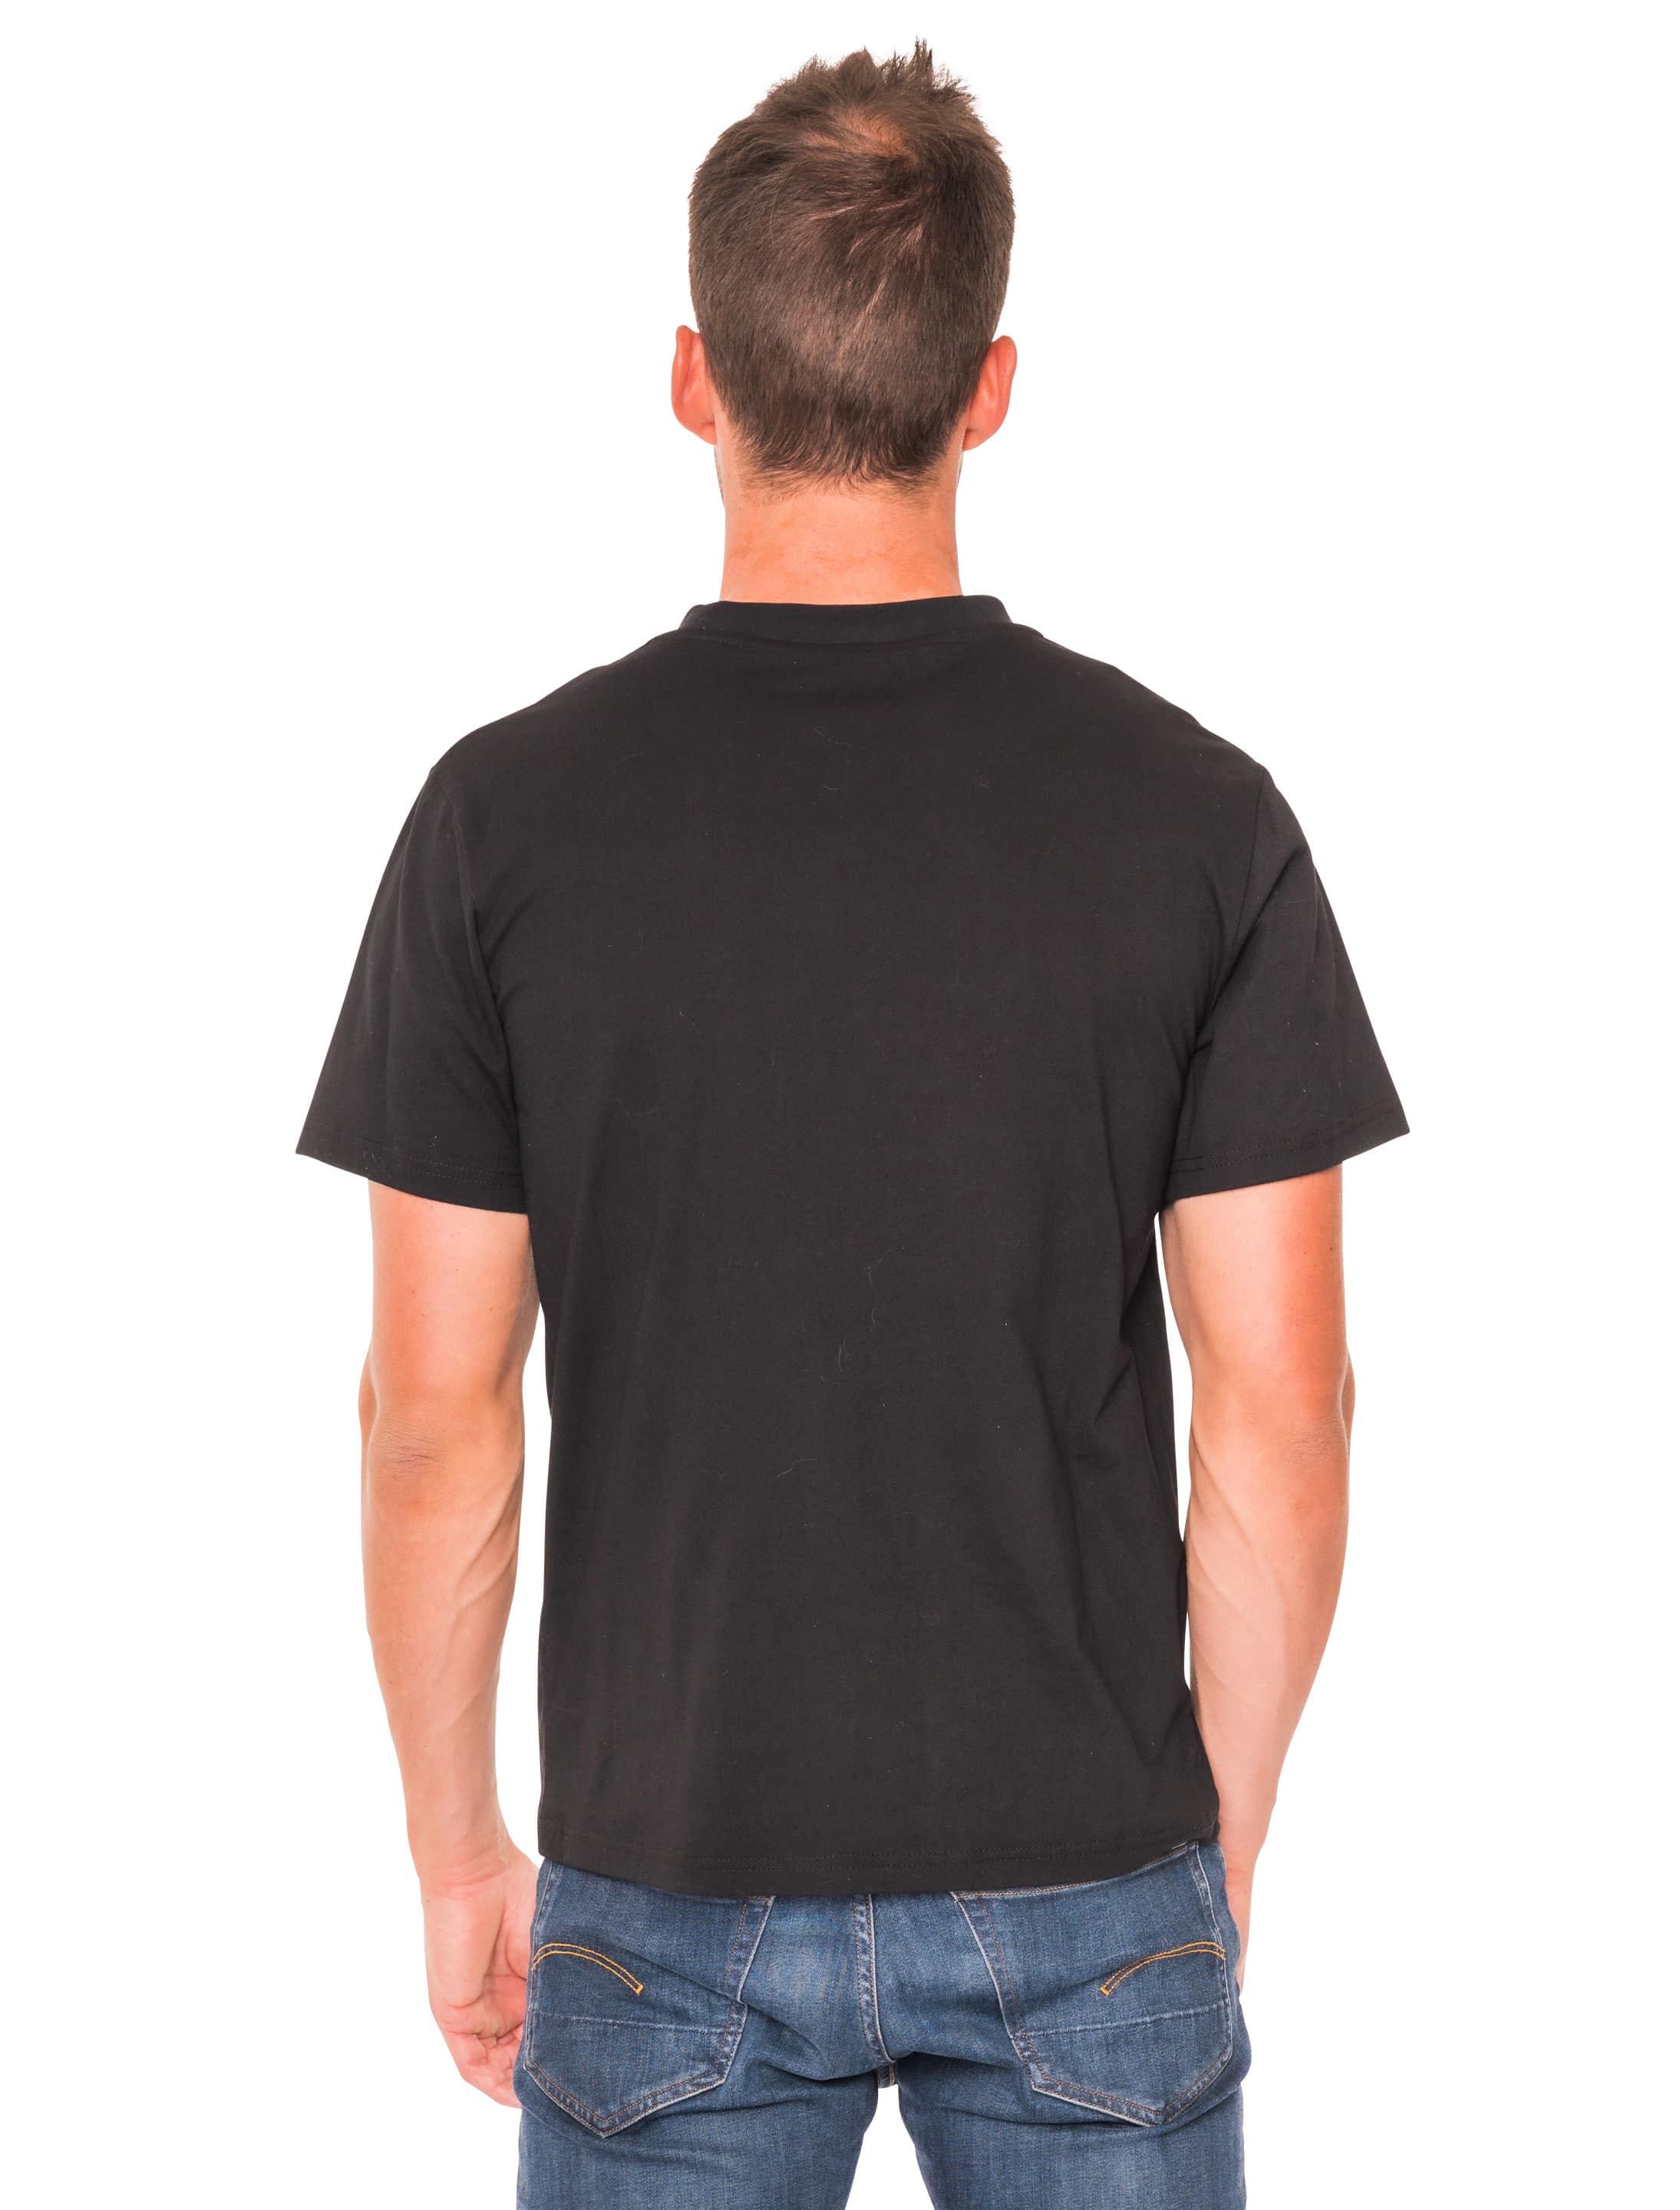 T-Shirt 90er Jahre Herren schwarz L